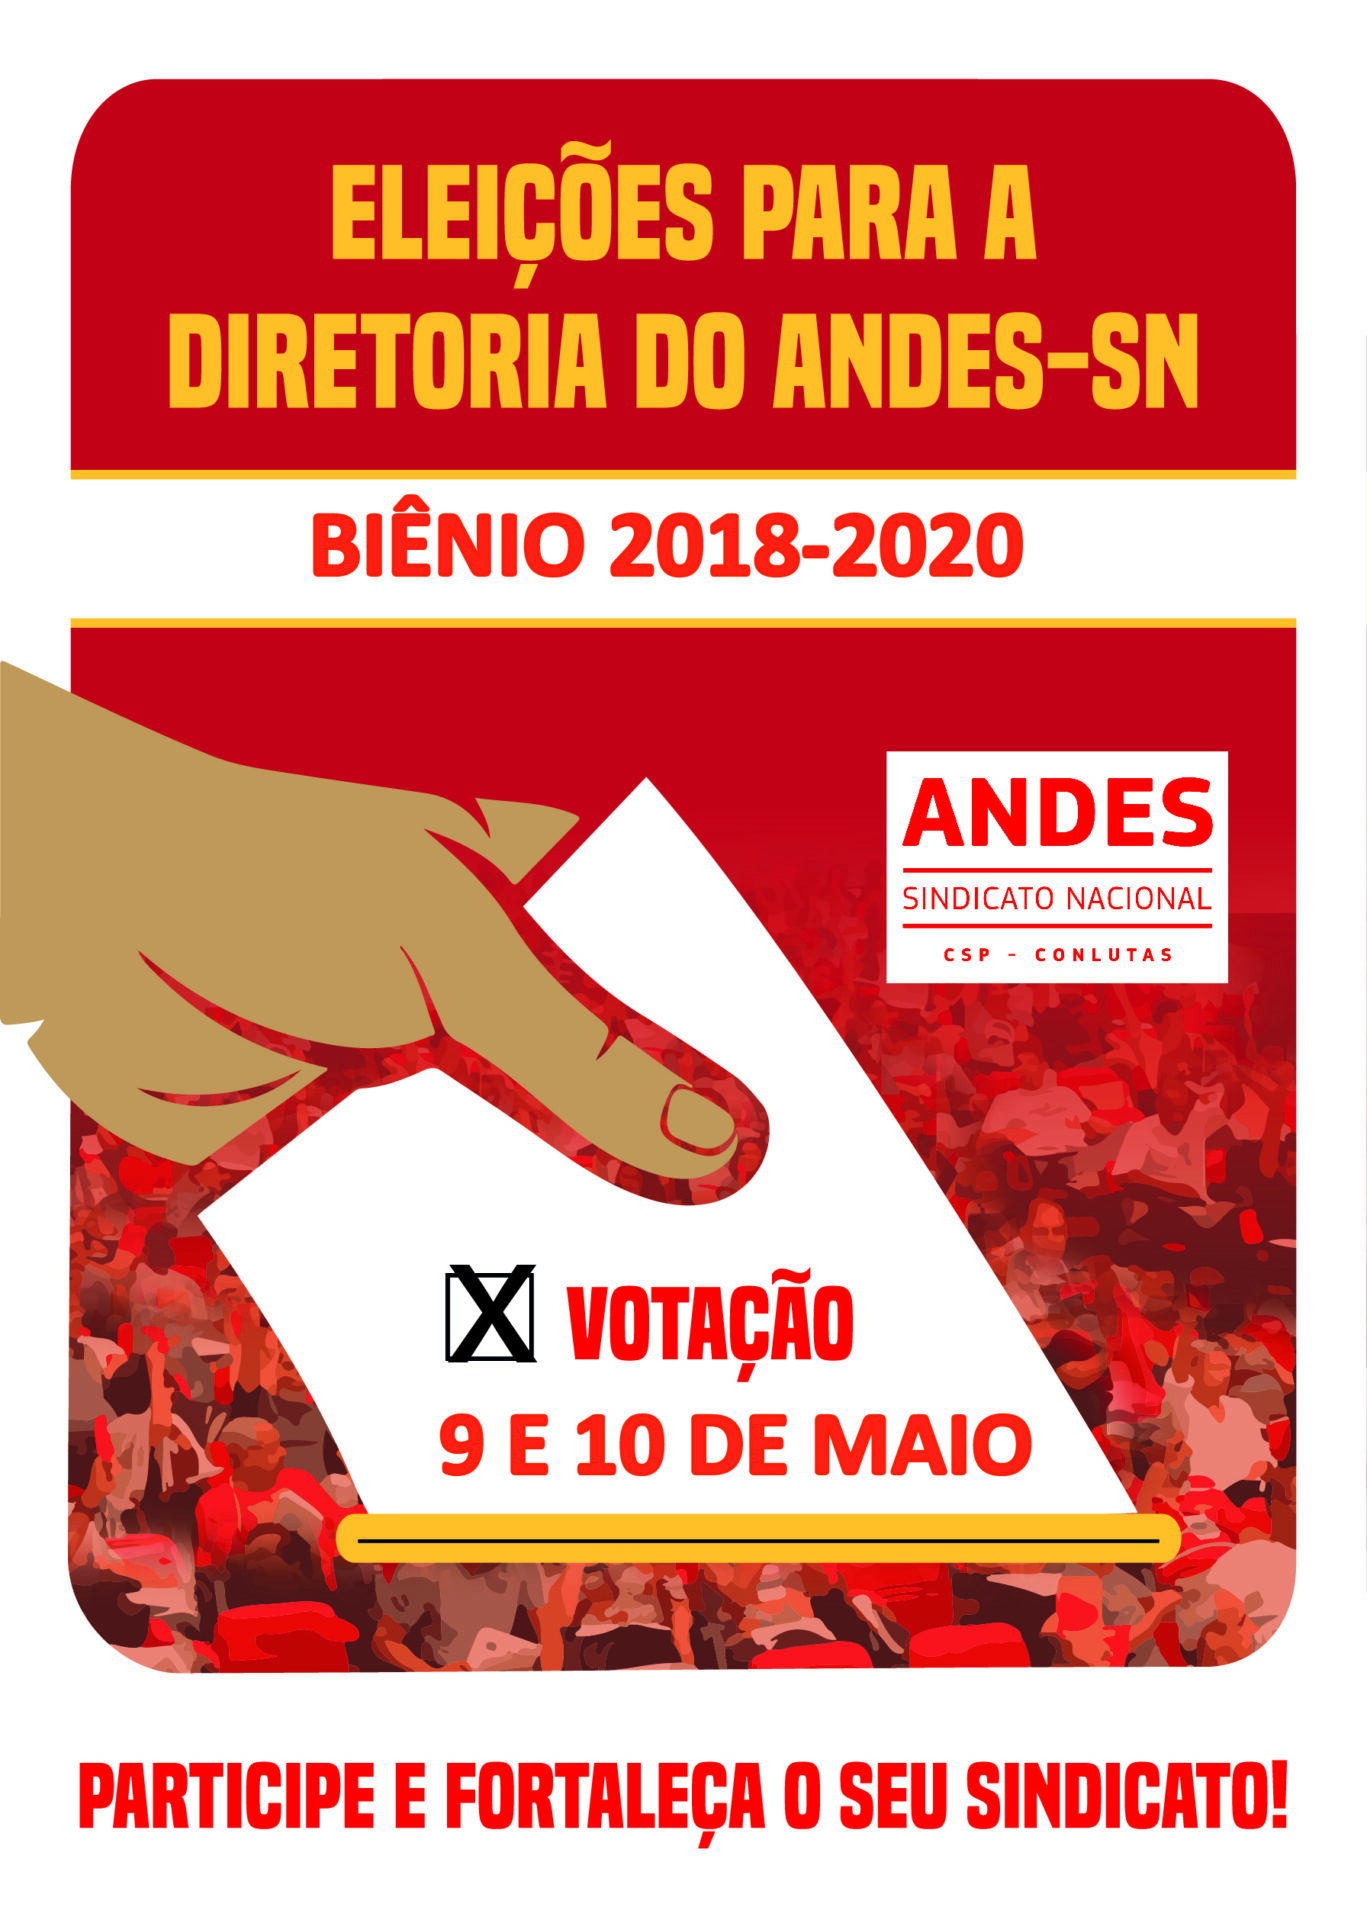 ANDES-SN realiza eleição para nova diretoria nos dias 9 e 10 de maio